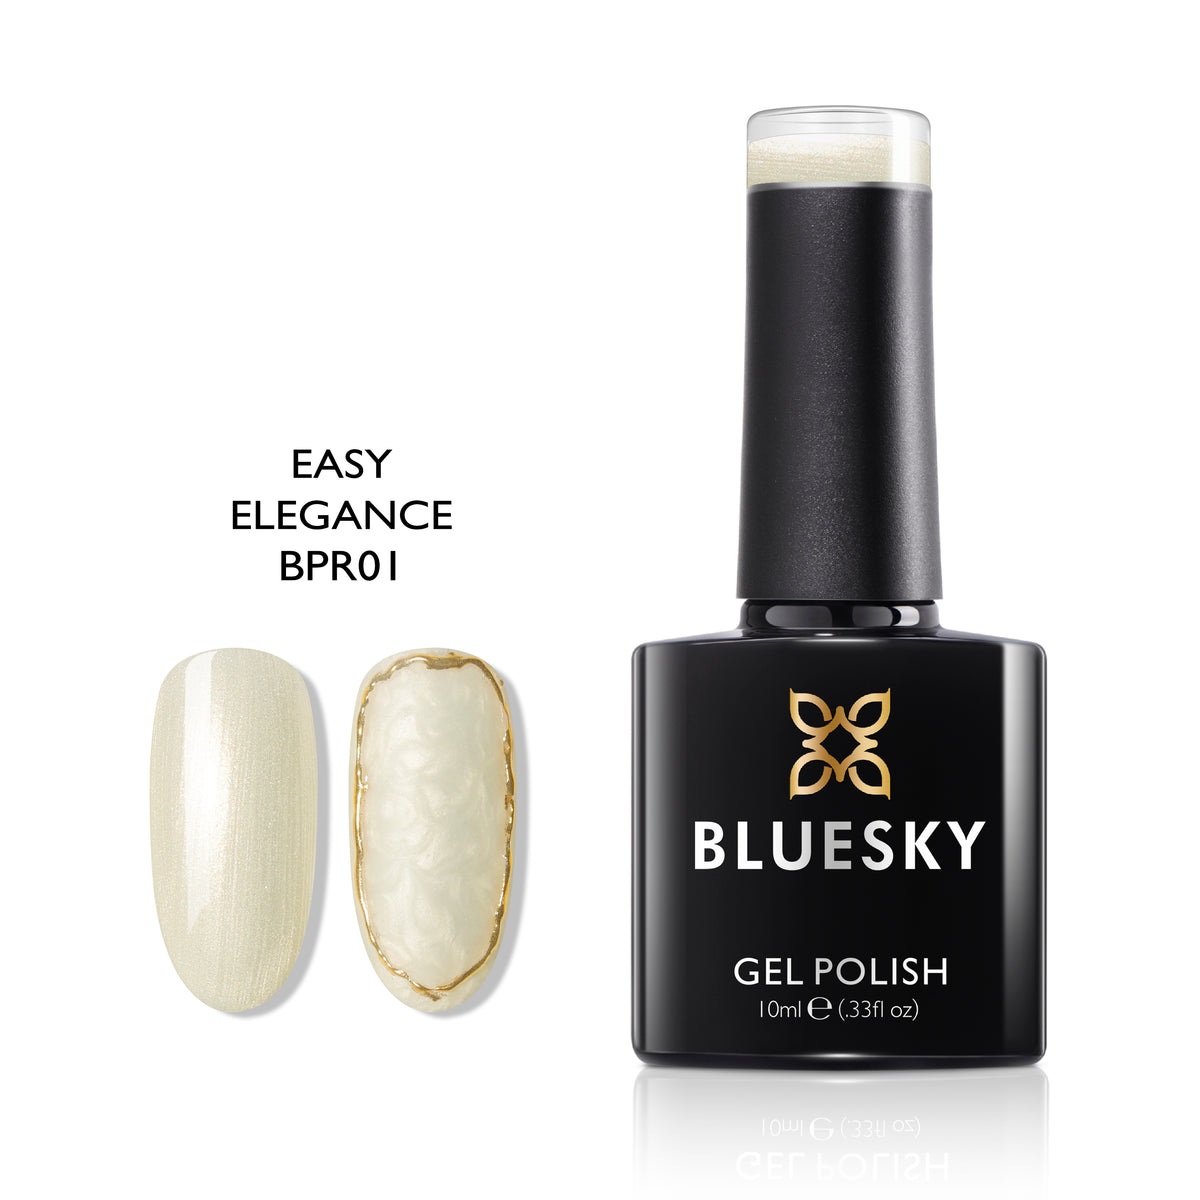 Bluesky Gel Polish-Easy Elegance BPR01